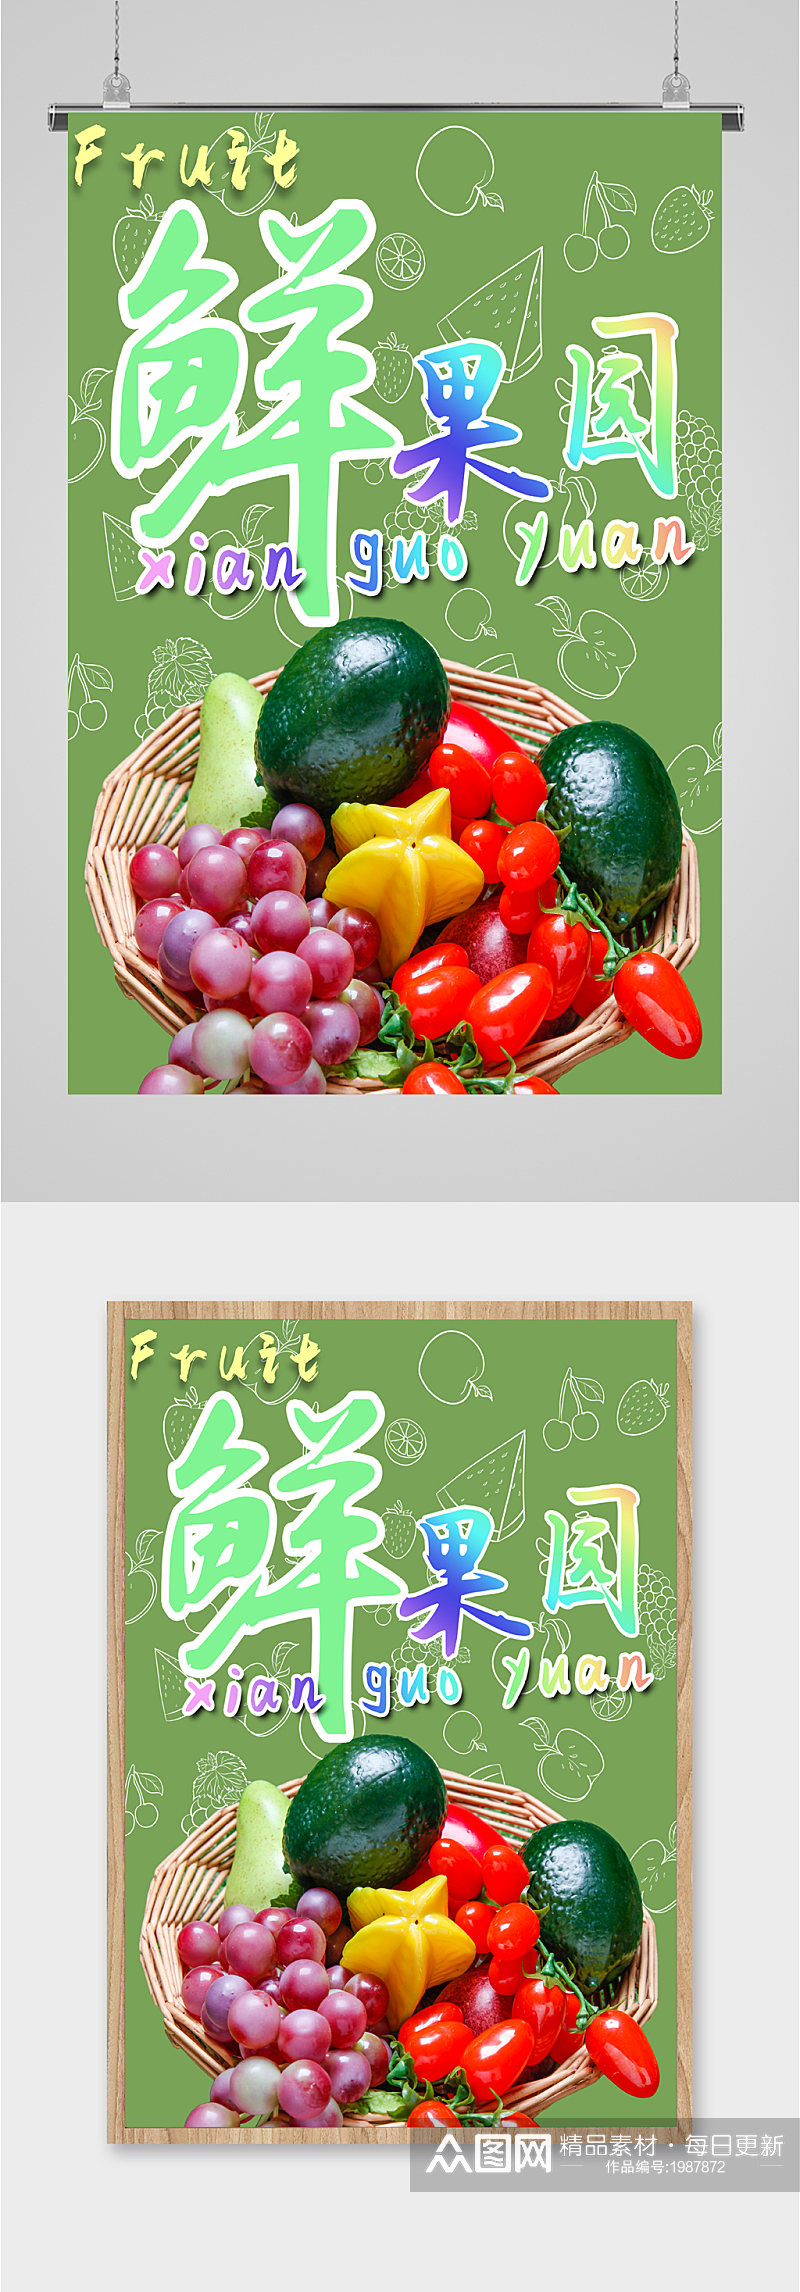 鲜果园水果宣传海报素材